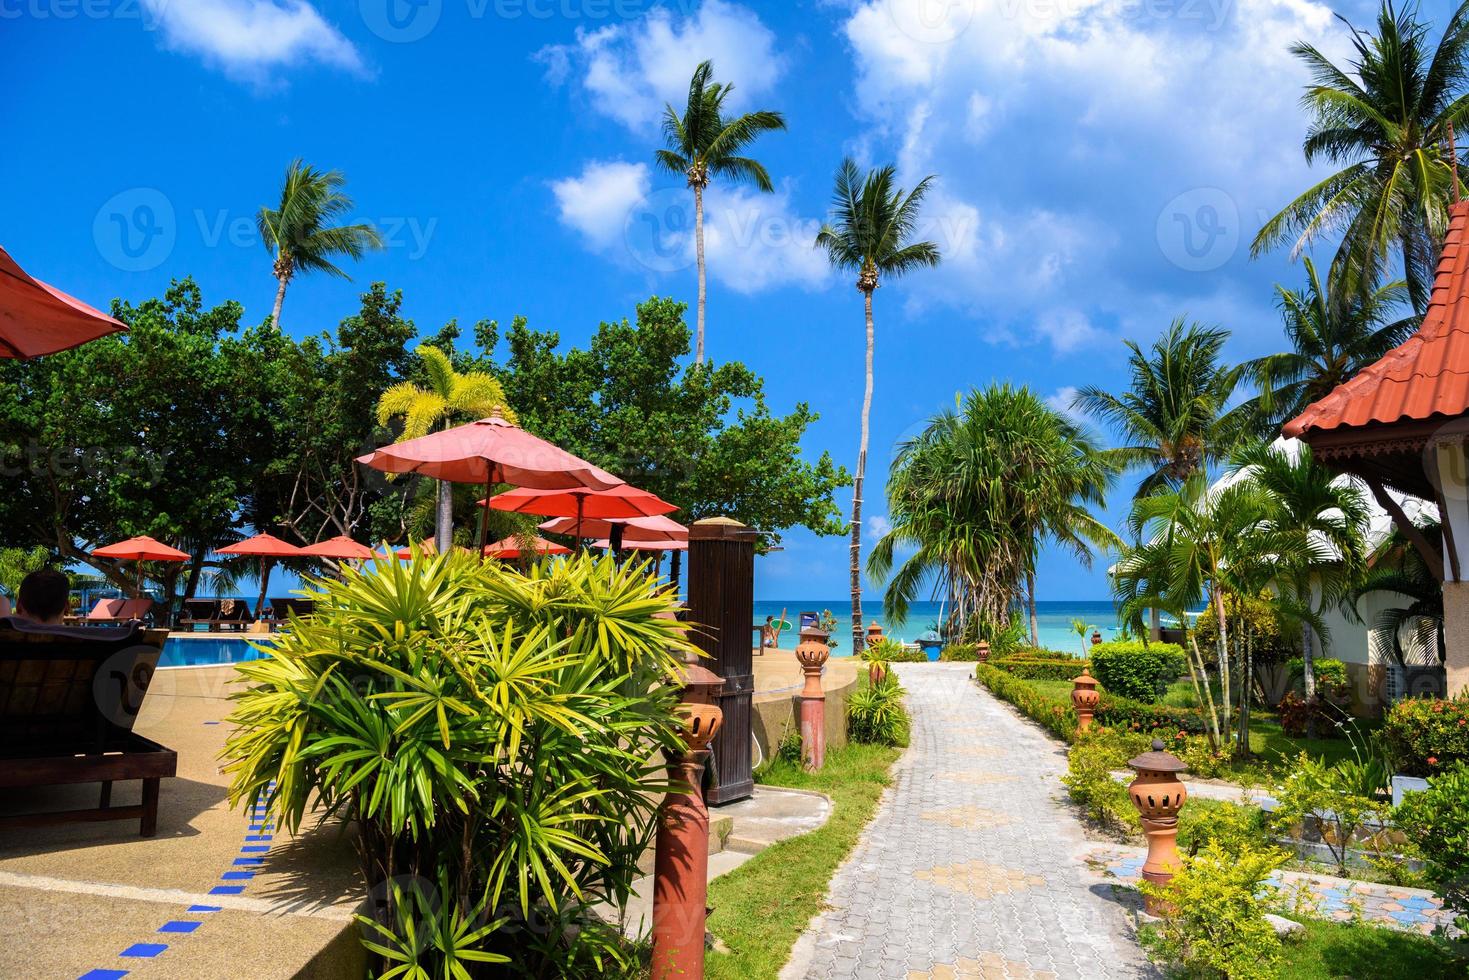 bungalows y palmeras, playa de haad yao, isla de koh phangan, suratth foto